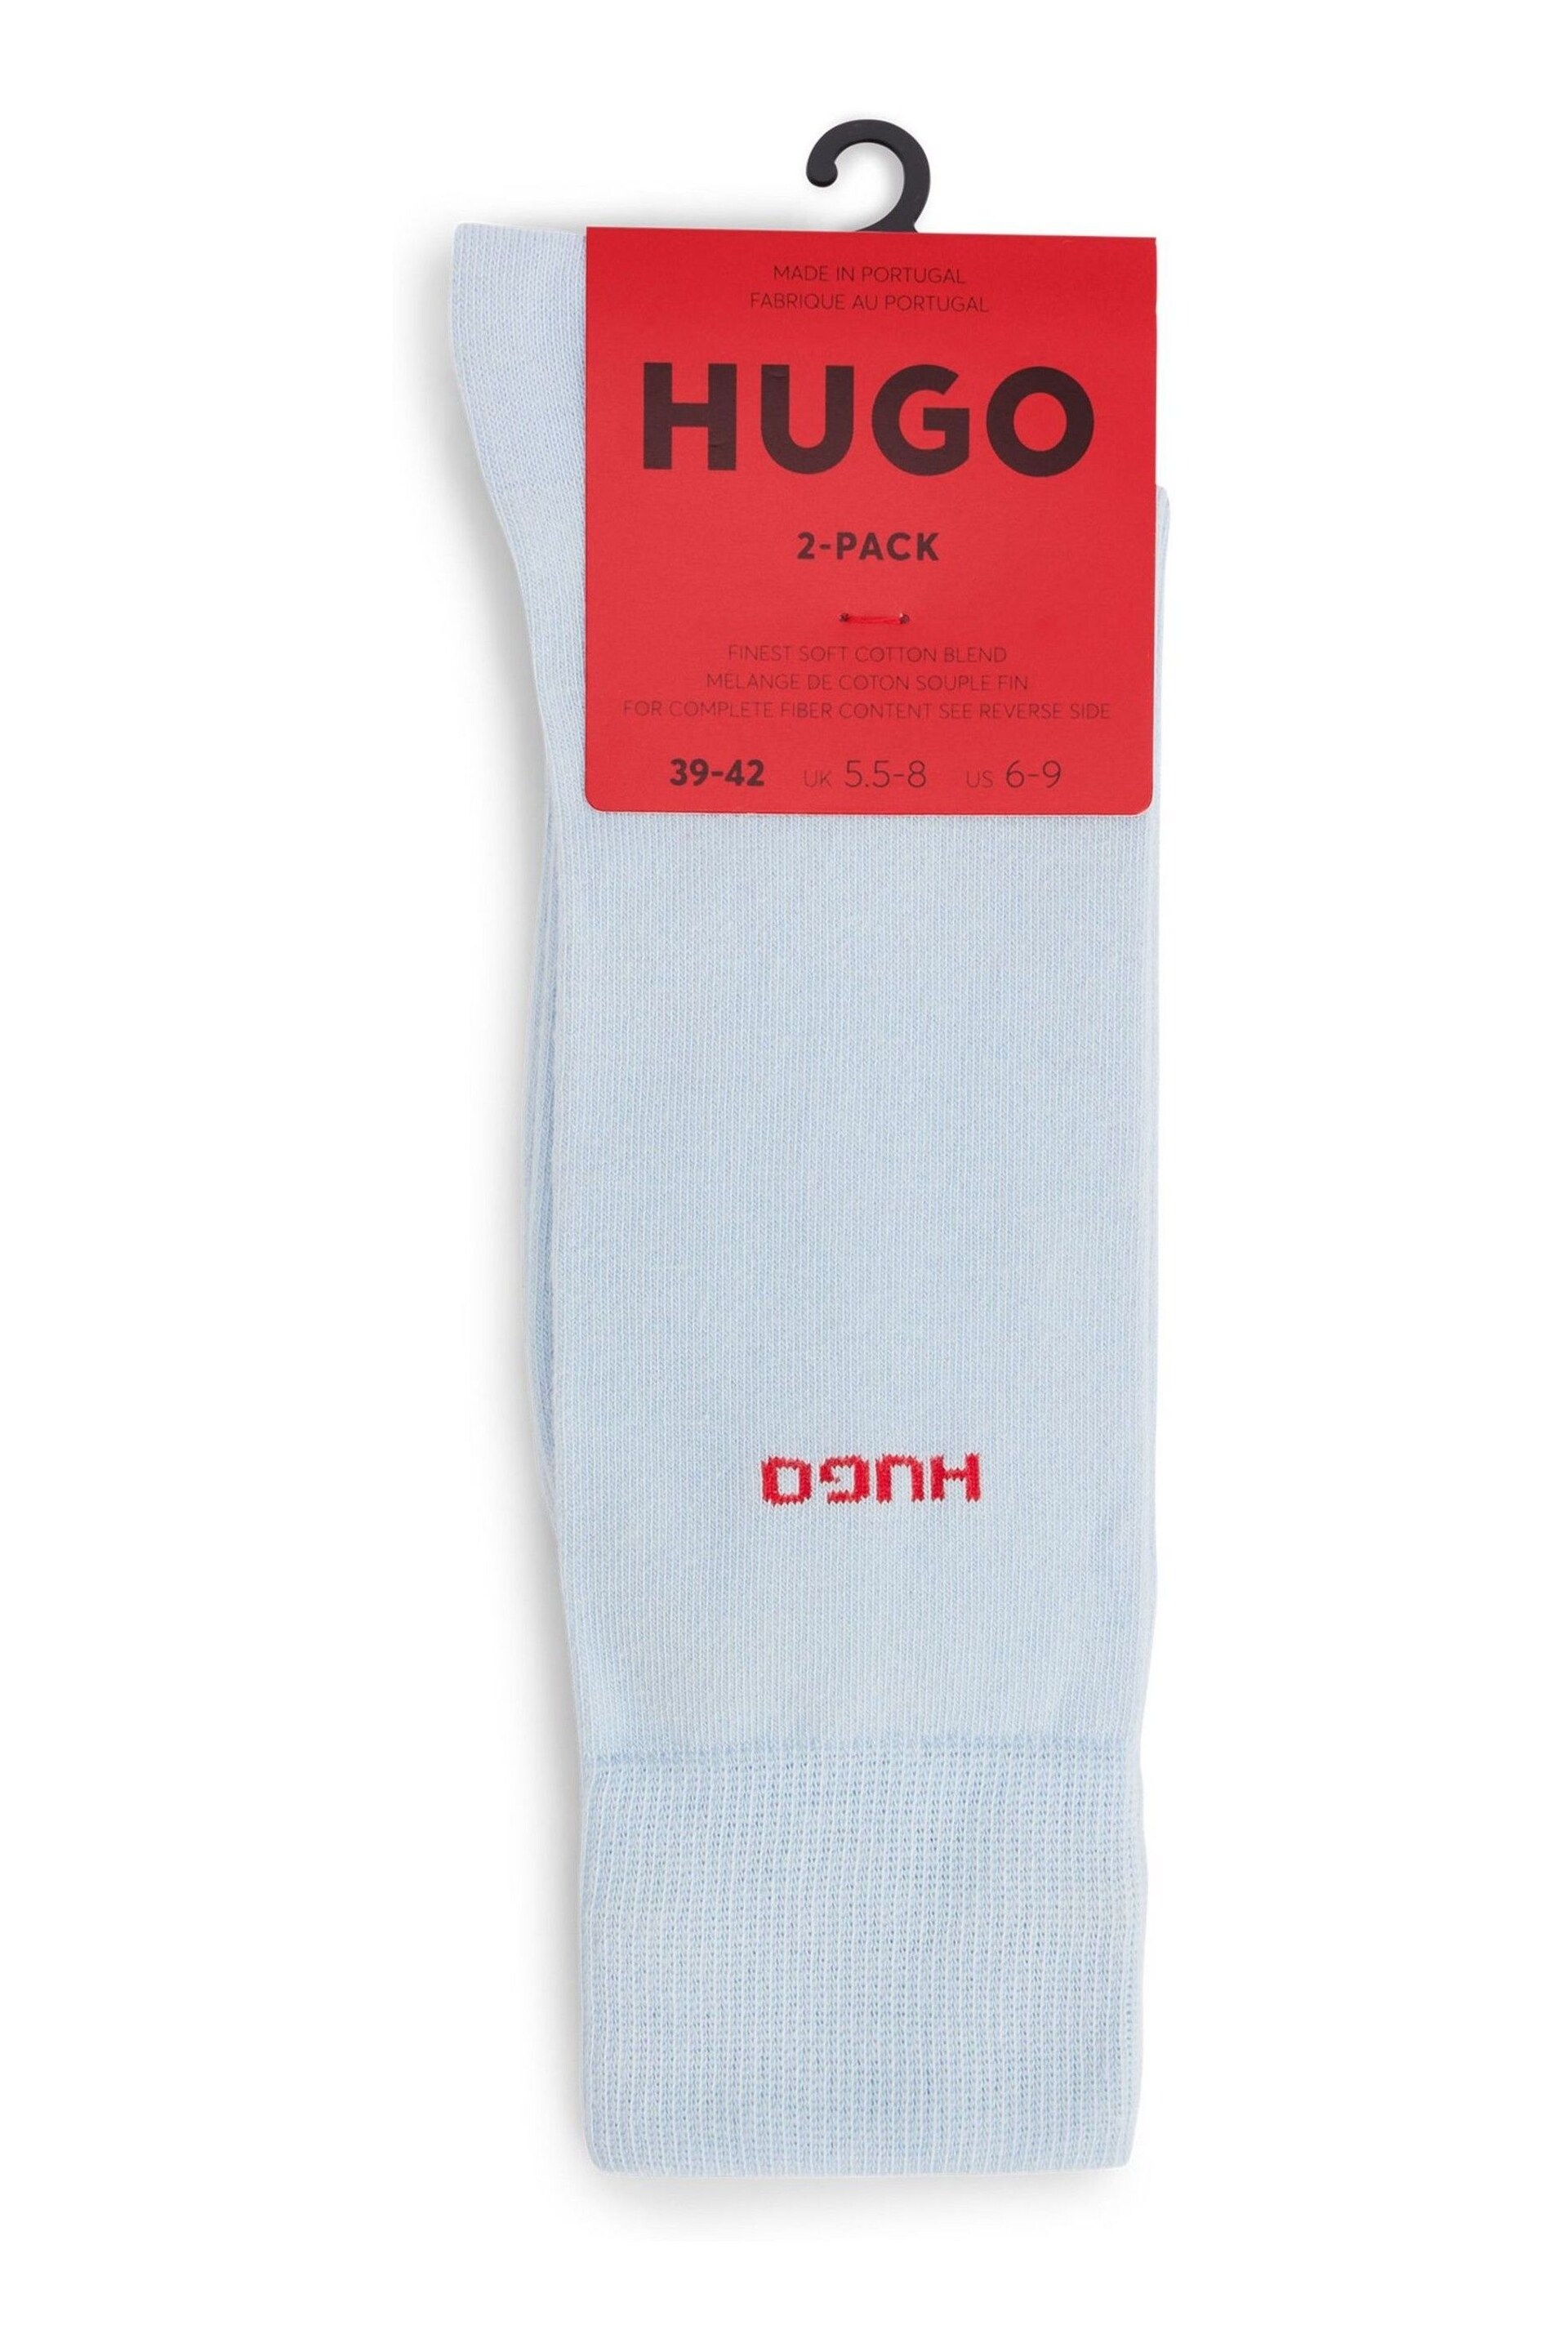 HUGO Blue Socks 2 Pack in a Cotton Blend - Image 2 of 3